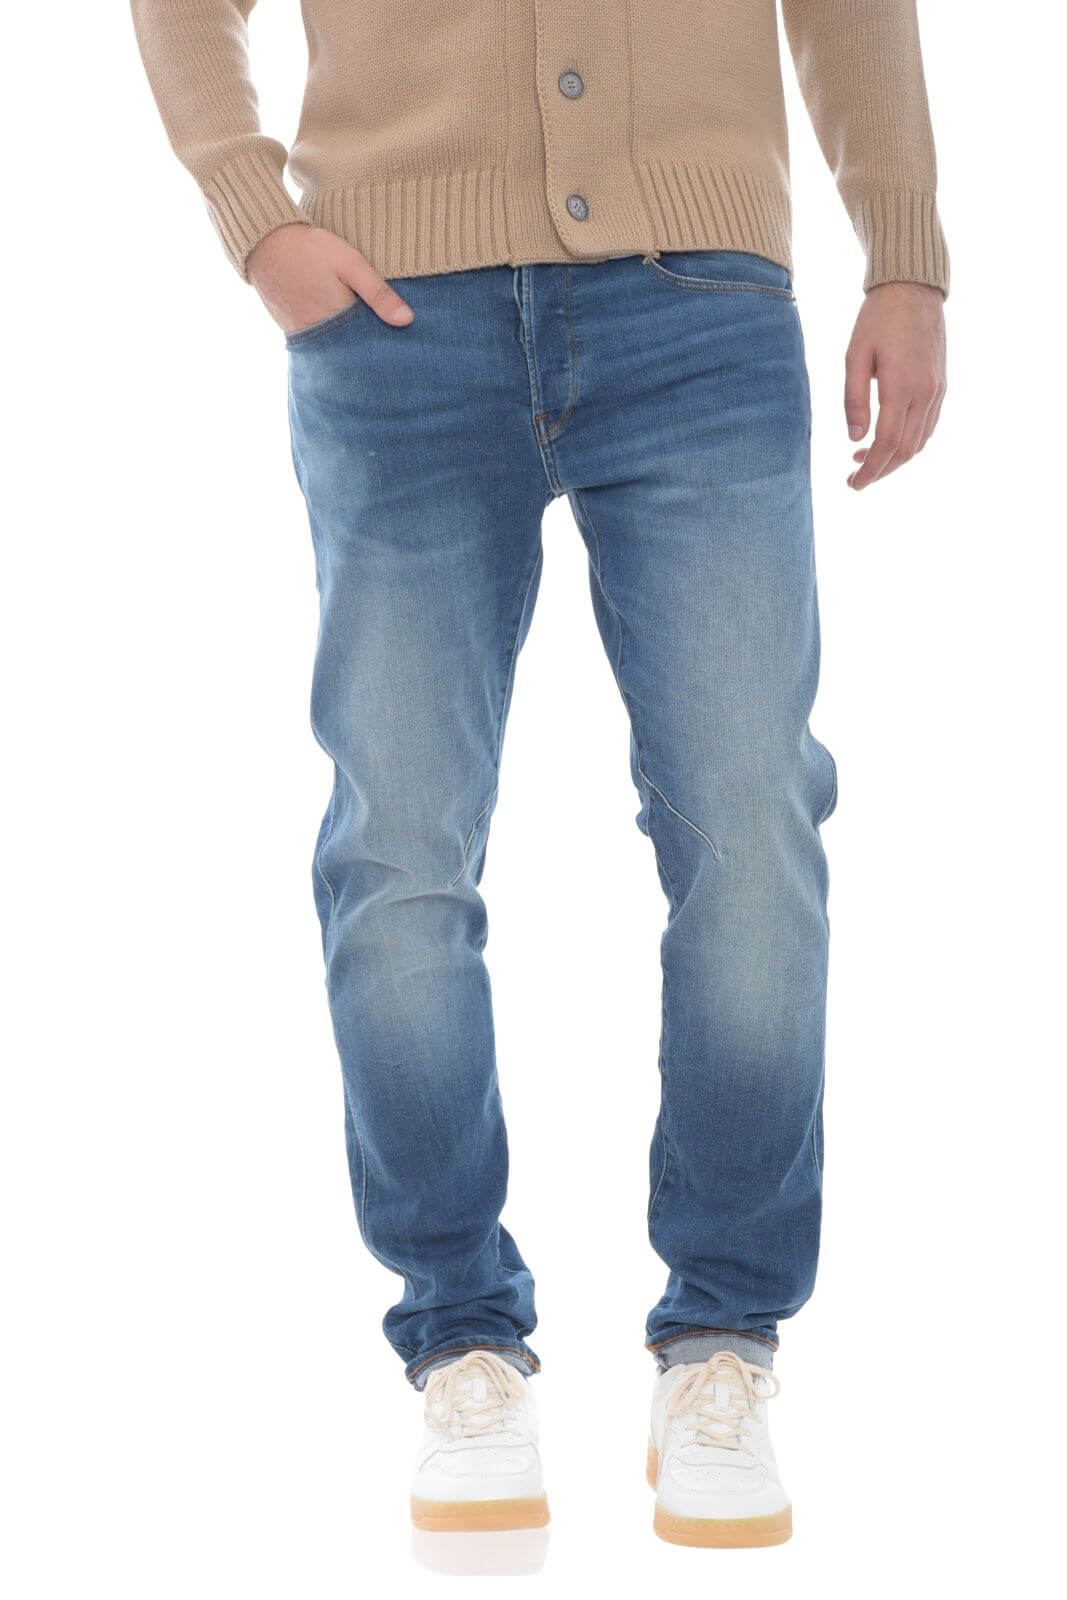 G Star Jeans Uomo lavaggio medio